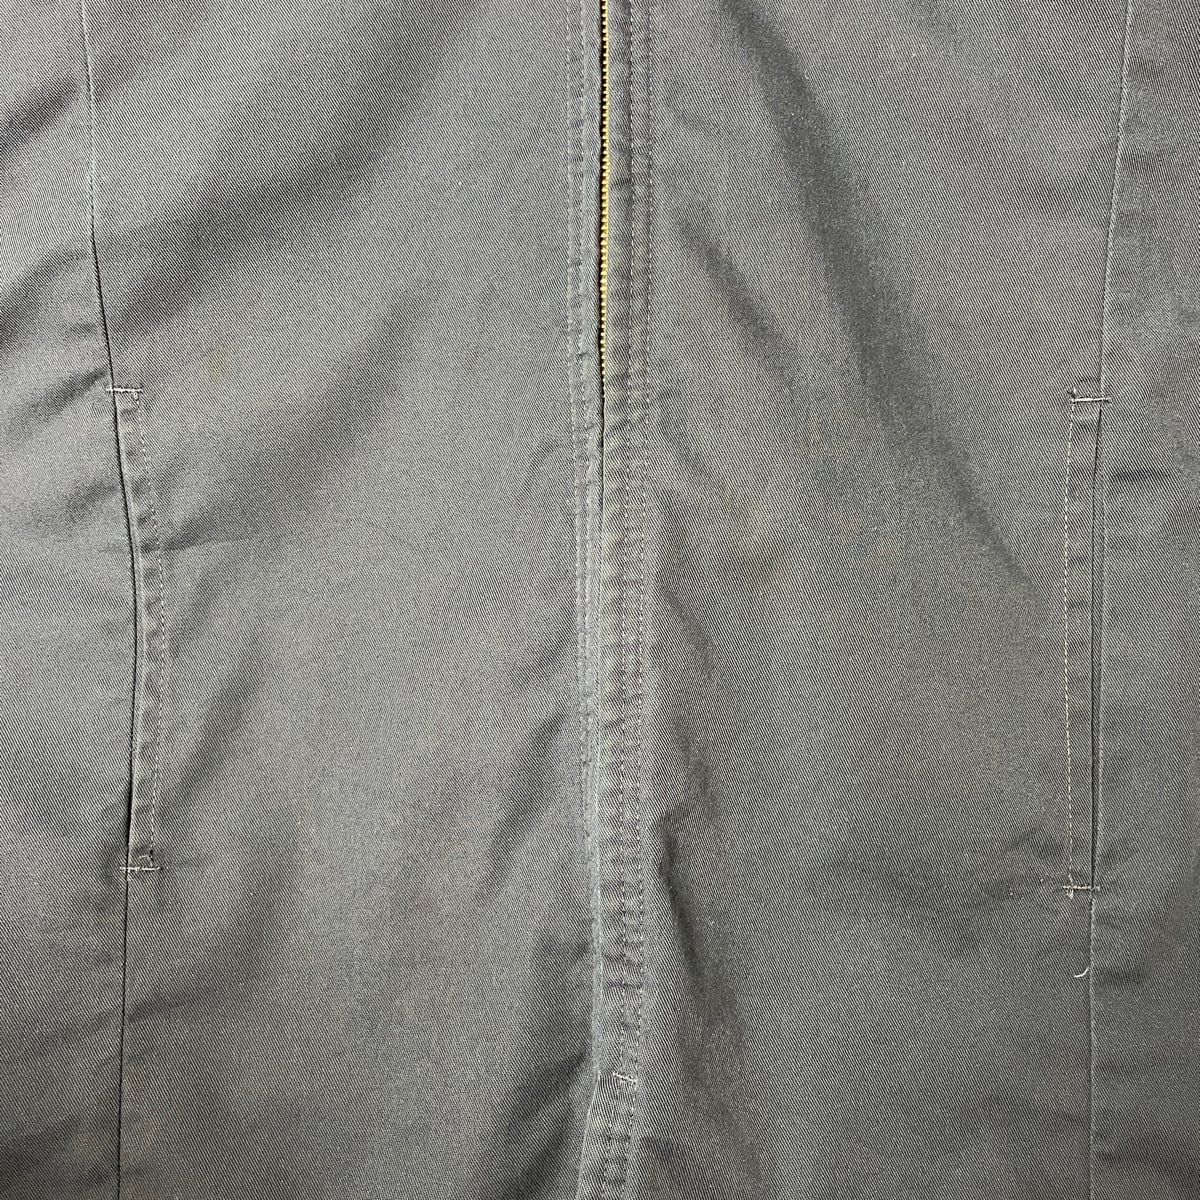 シンタス USA製 ワンポイント刺繍 ワークジャケット XL ネイビー CiNTAS ジップアップ ブルゾン メンズ   【230413】